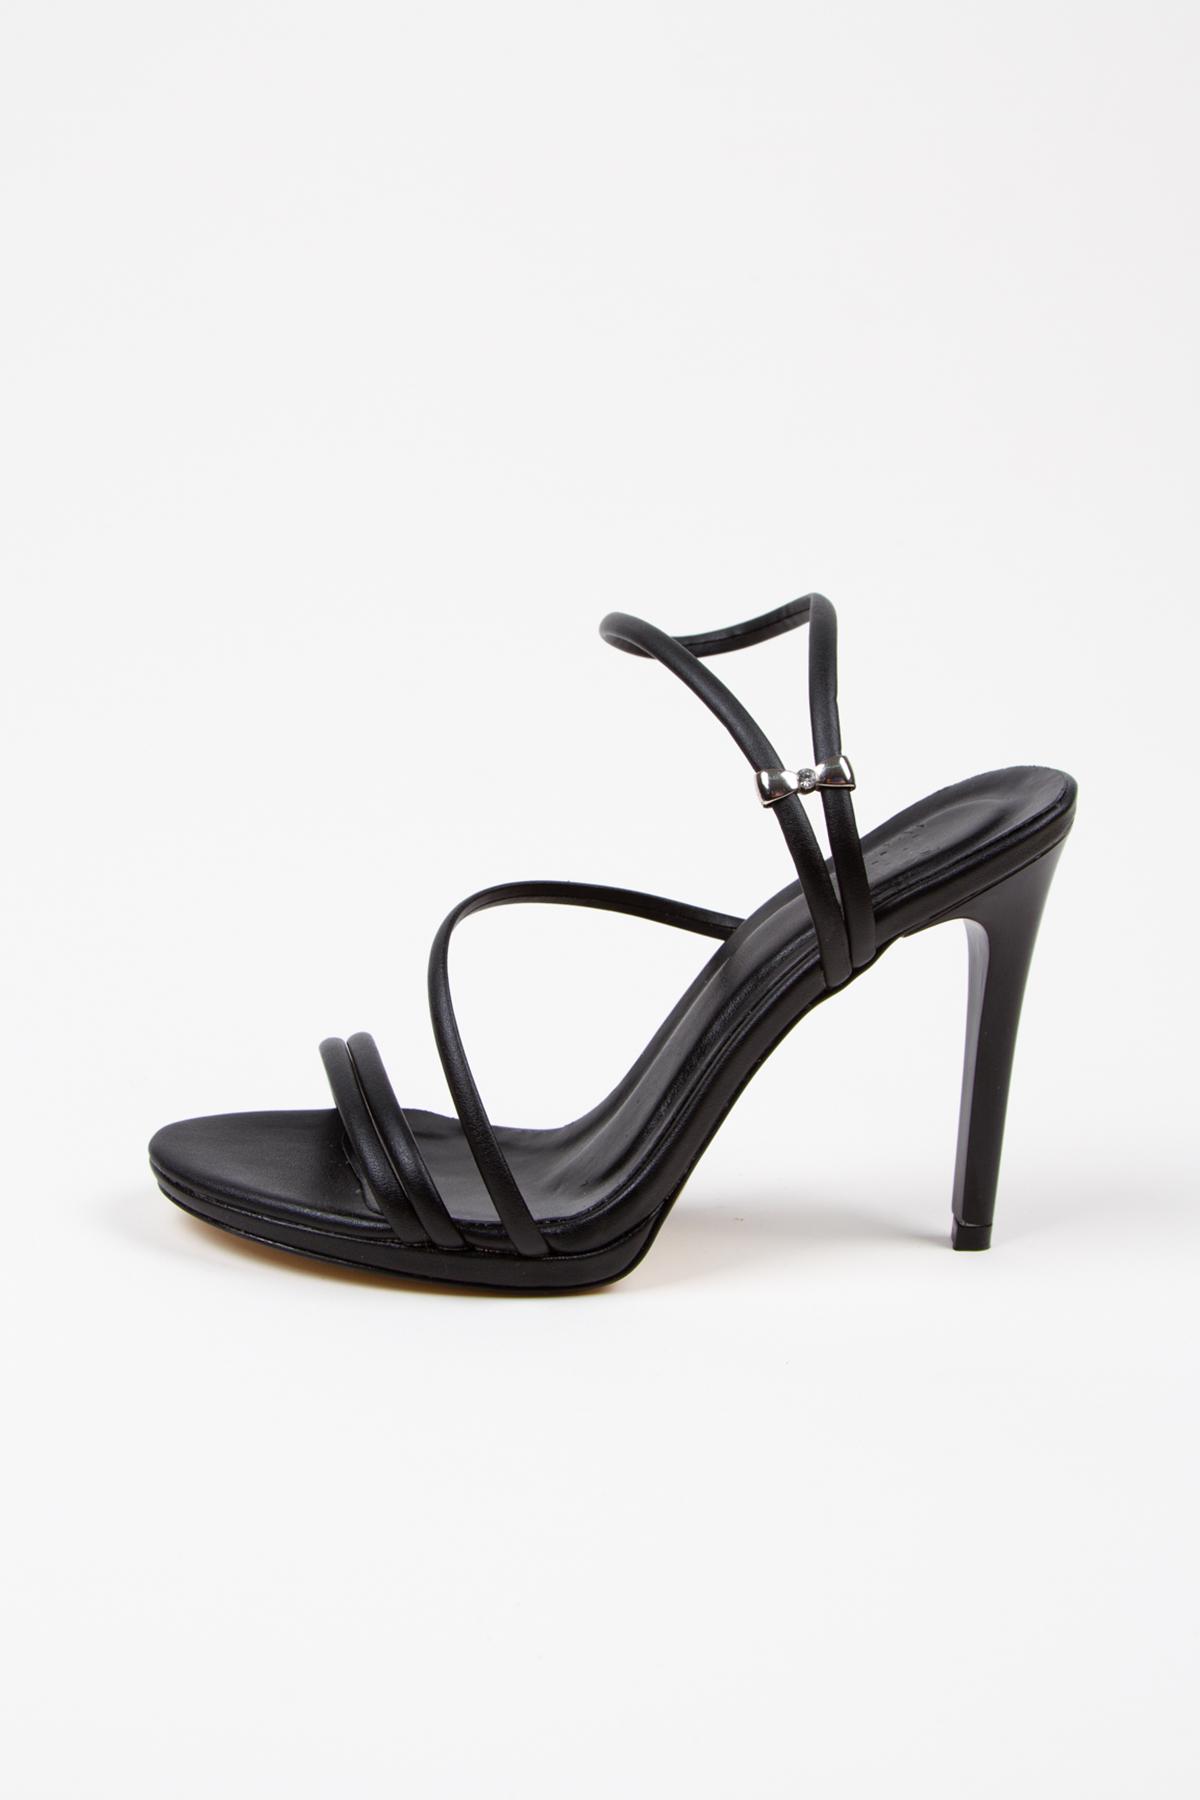 Kadın Yazlık 10 cm İnce Topuklu Ayakkabı ve Çanta Takımı Siyah